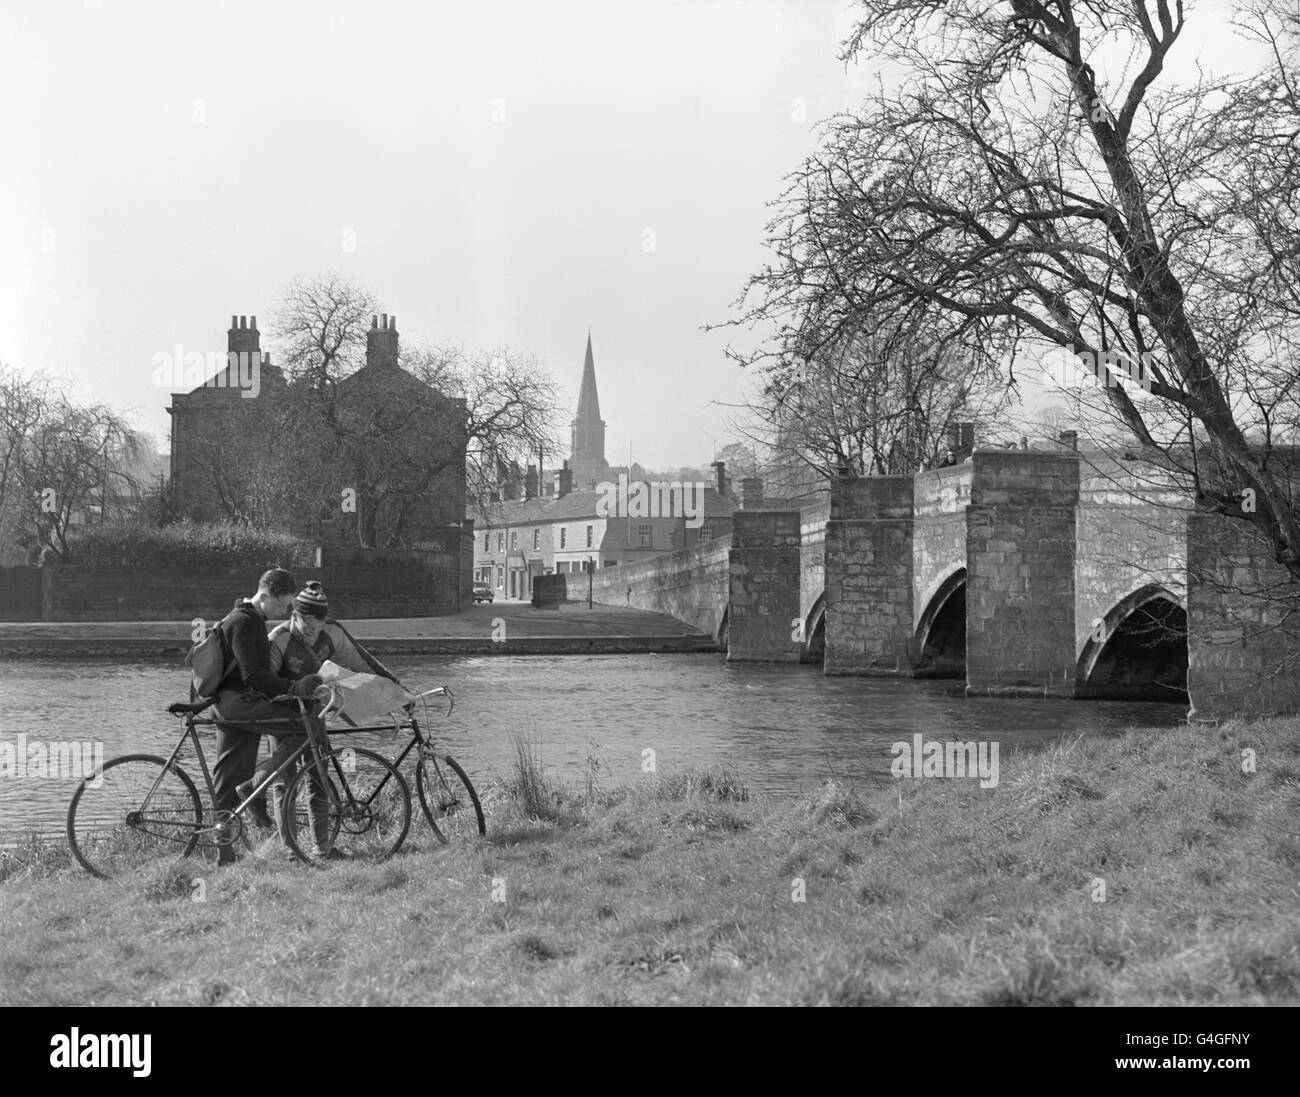 Il fiume Wye scorre sotto il ponte a Bakewell, Derbyshire. Il ponte gotico è uno dei più antichi della Gran Bretagna. La Chiesa dei Santi di Bakewell può essere vista in lontananza Foto Stock